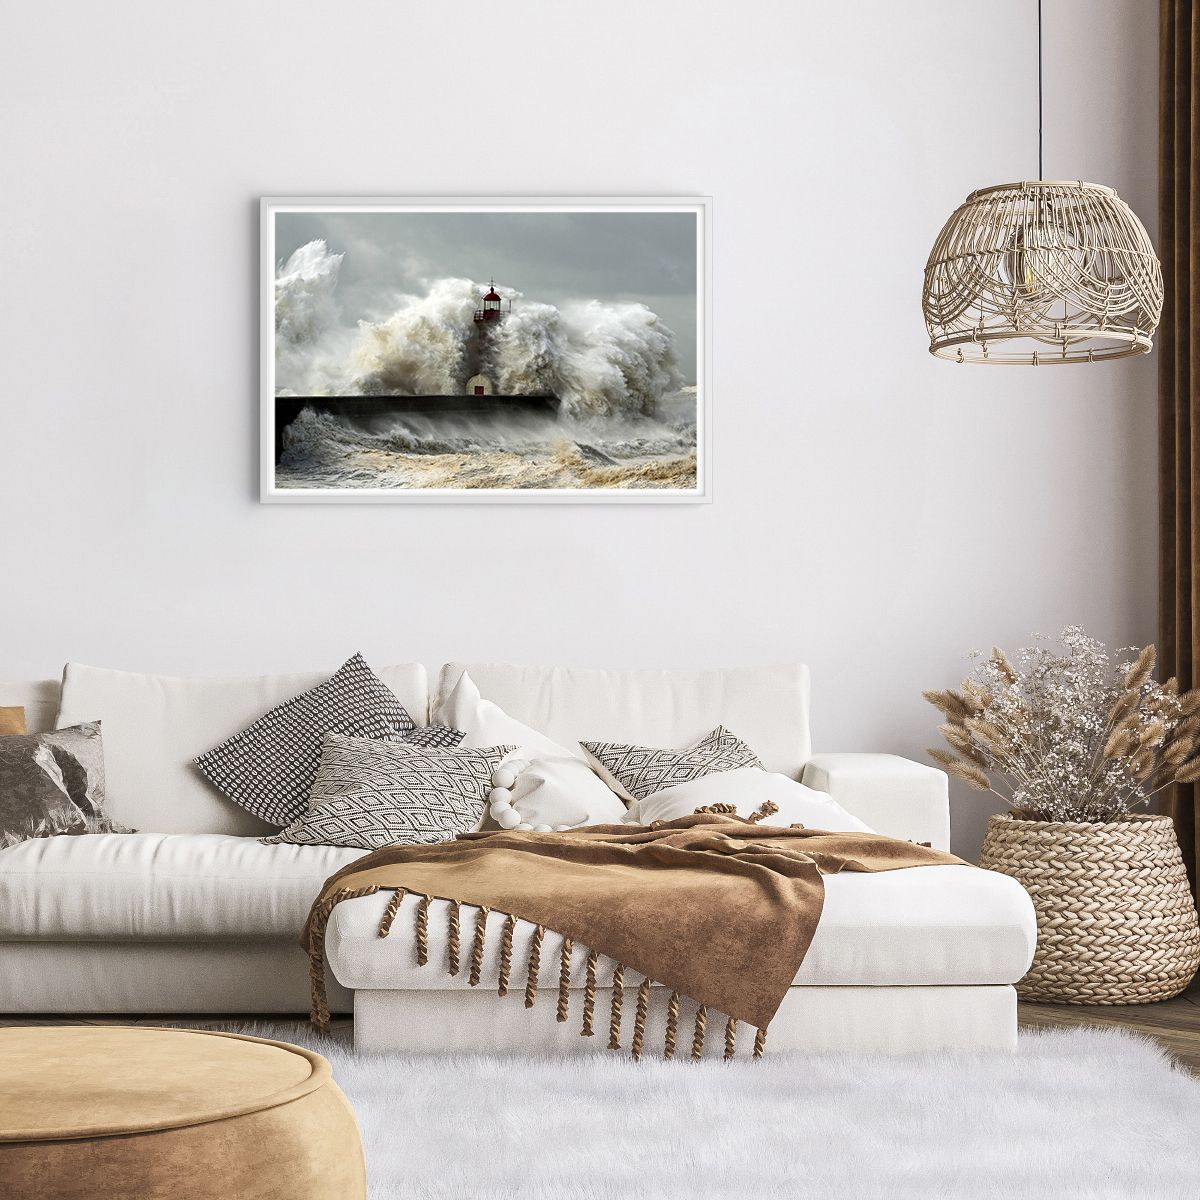 Poster in einem weißen Rahmen Landschaft, Poster in einem weißen Rahmen Leuchtturm, Poster in einem weißen Rahmen Sturm, Poster in einem weißen Rahmen Ozean, Poster in einem weißen Rahmen Meer